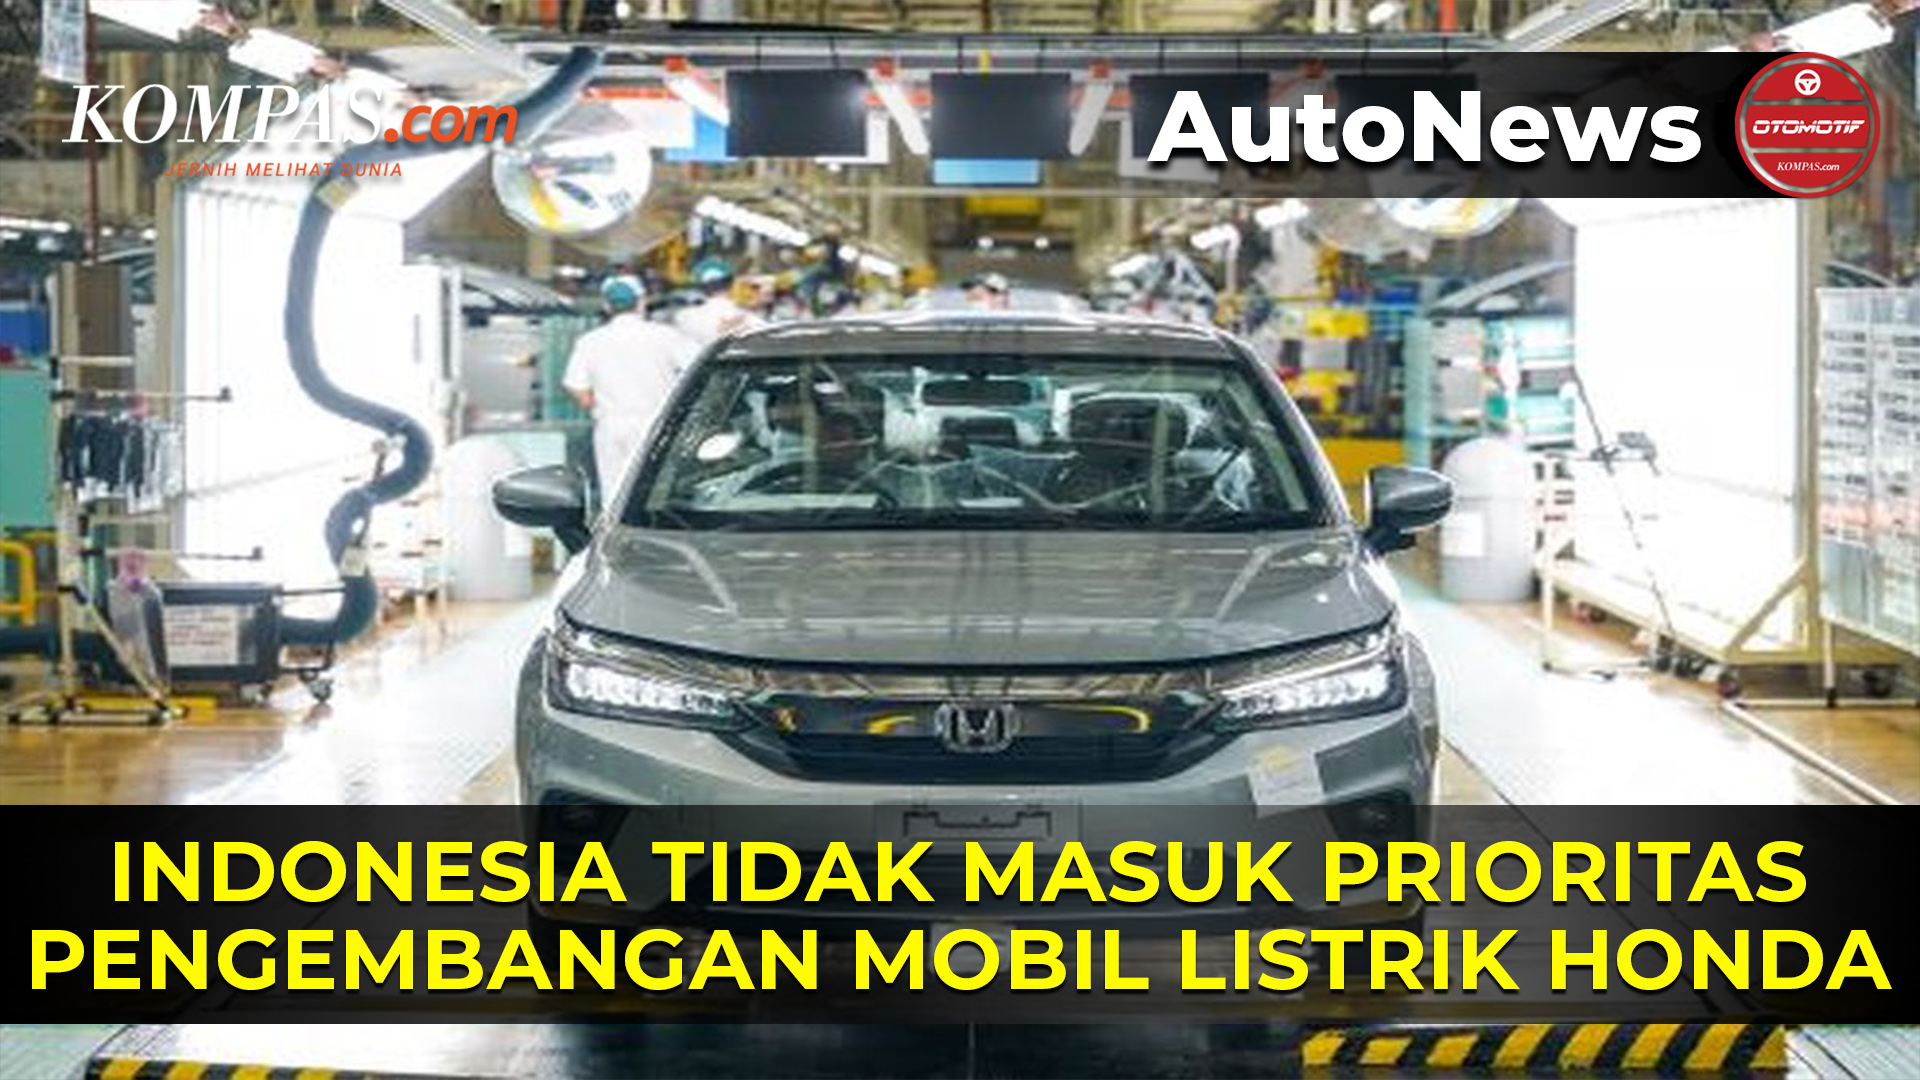 Indonesia Bukan Negara Prioritas Pengembangan Mobil Listrik Honda